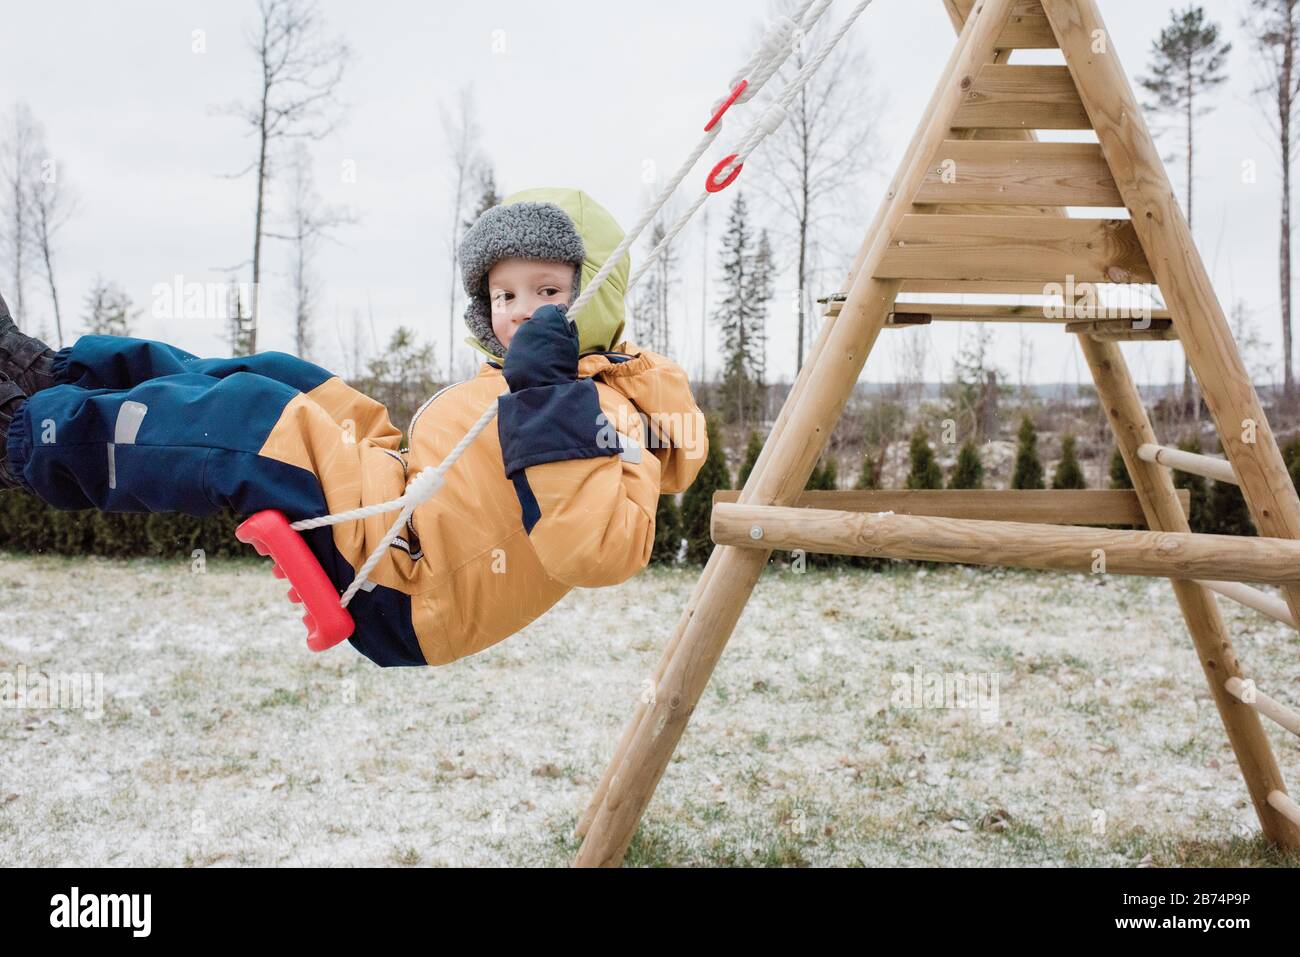 primer plano de un niño que se balancea en un columpio en el exterior en invierno Foto de stock